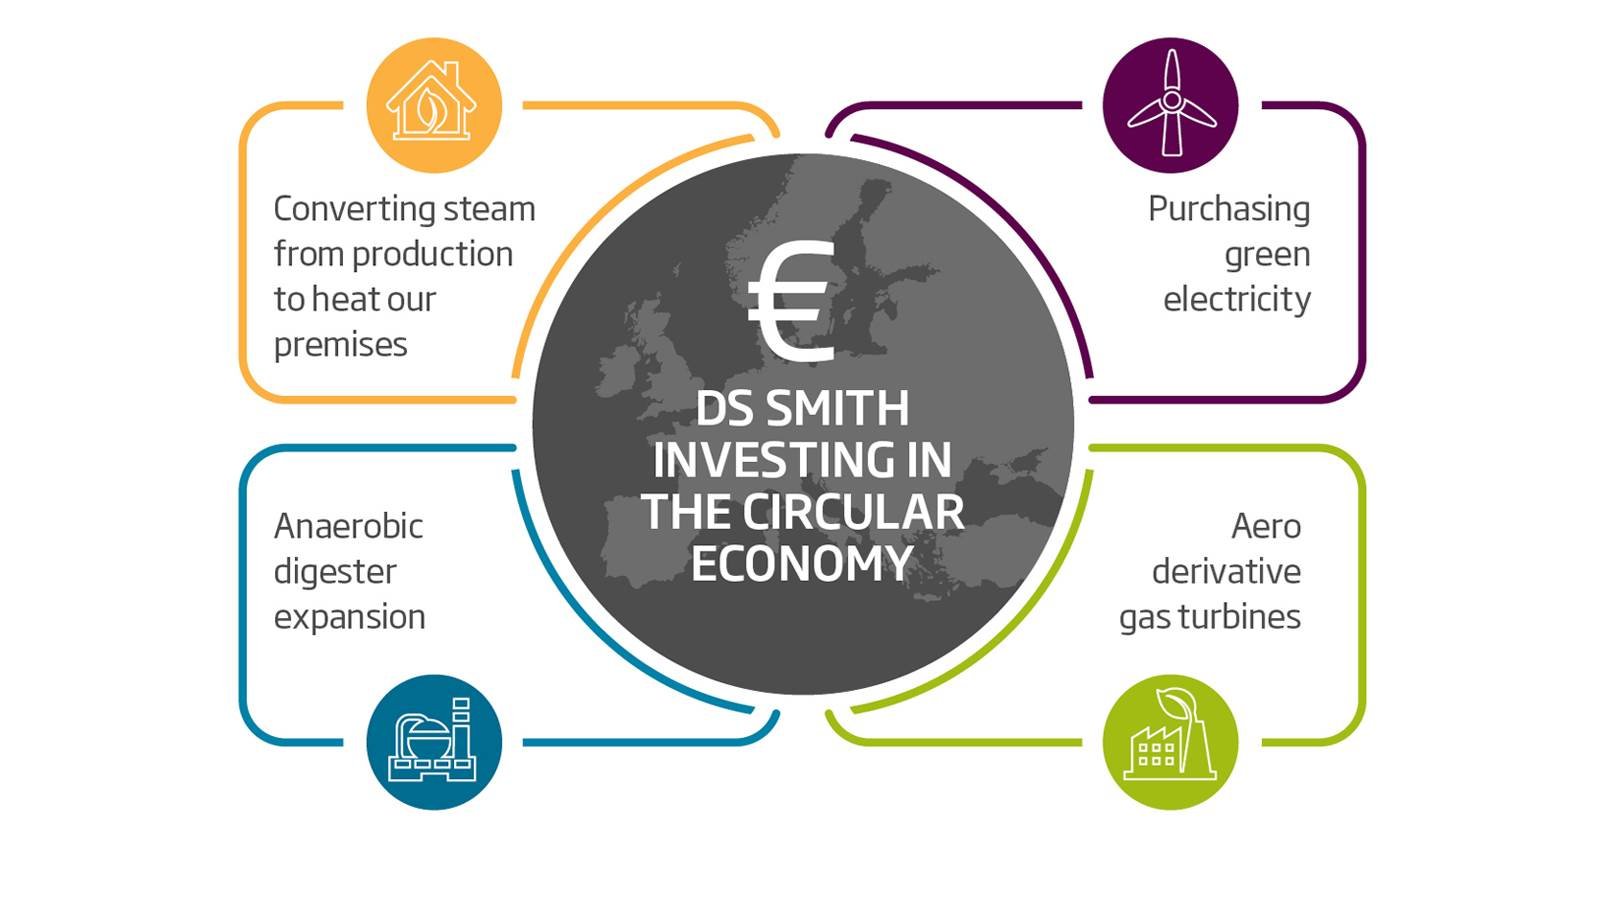 In heel Europa investeren wij strategisch in groene stroom, hernieuwbare energiebronnen en energie-efficiëntie